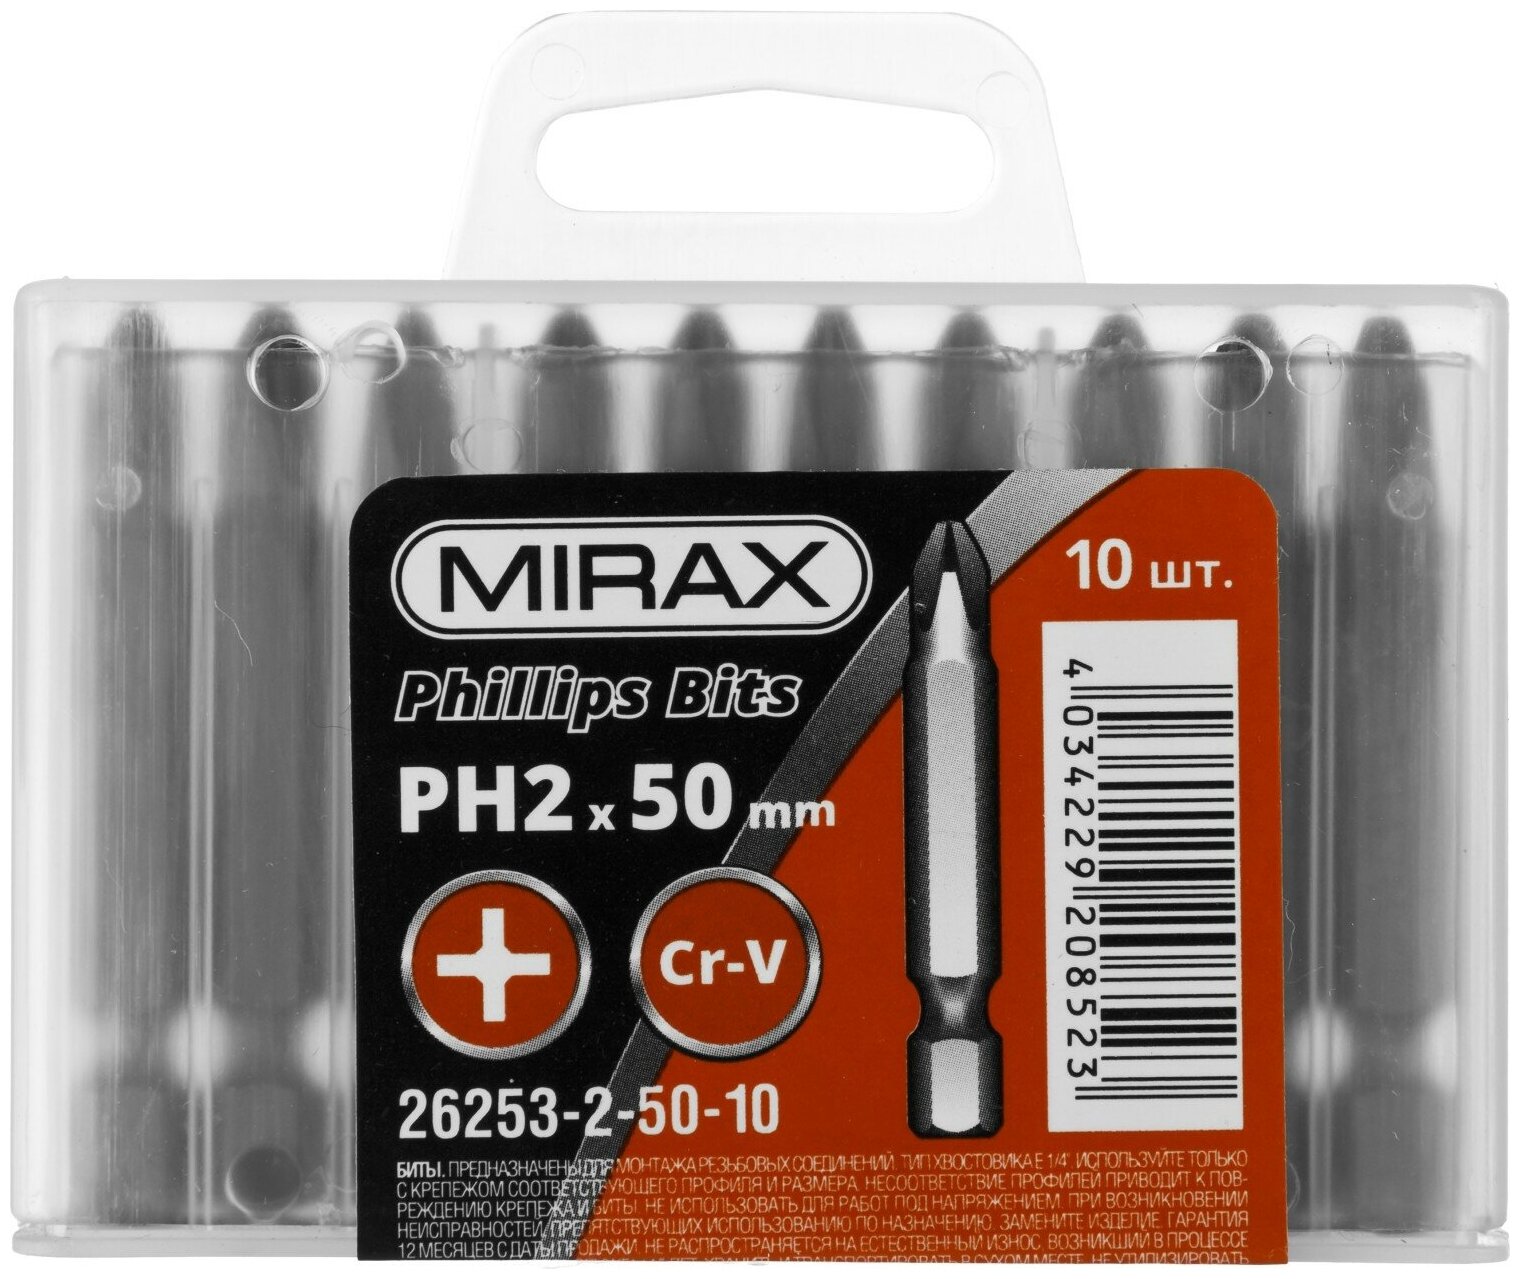 MIRAX PH 2, 50 мм, 10 шт, Биты (26253-2-50-10)